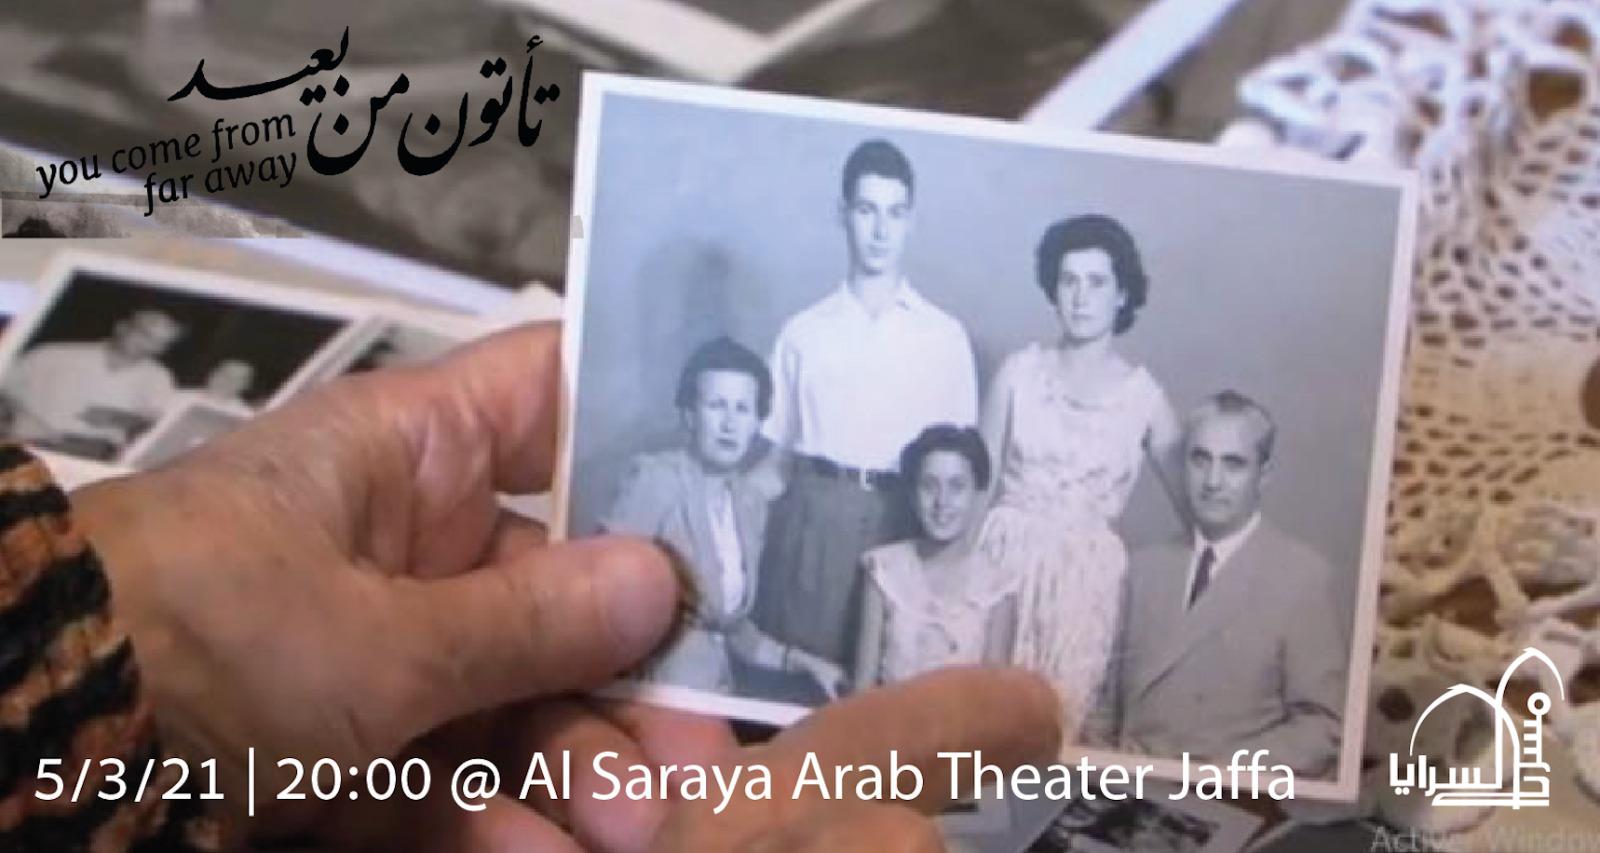 الجمعة: مسرح السرايا بيافا يعود اليكم بعرض فيلم تأتون من بعيد